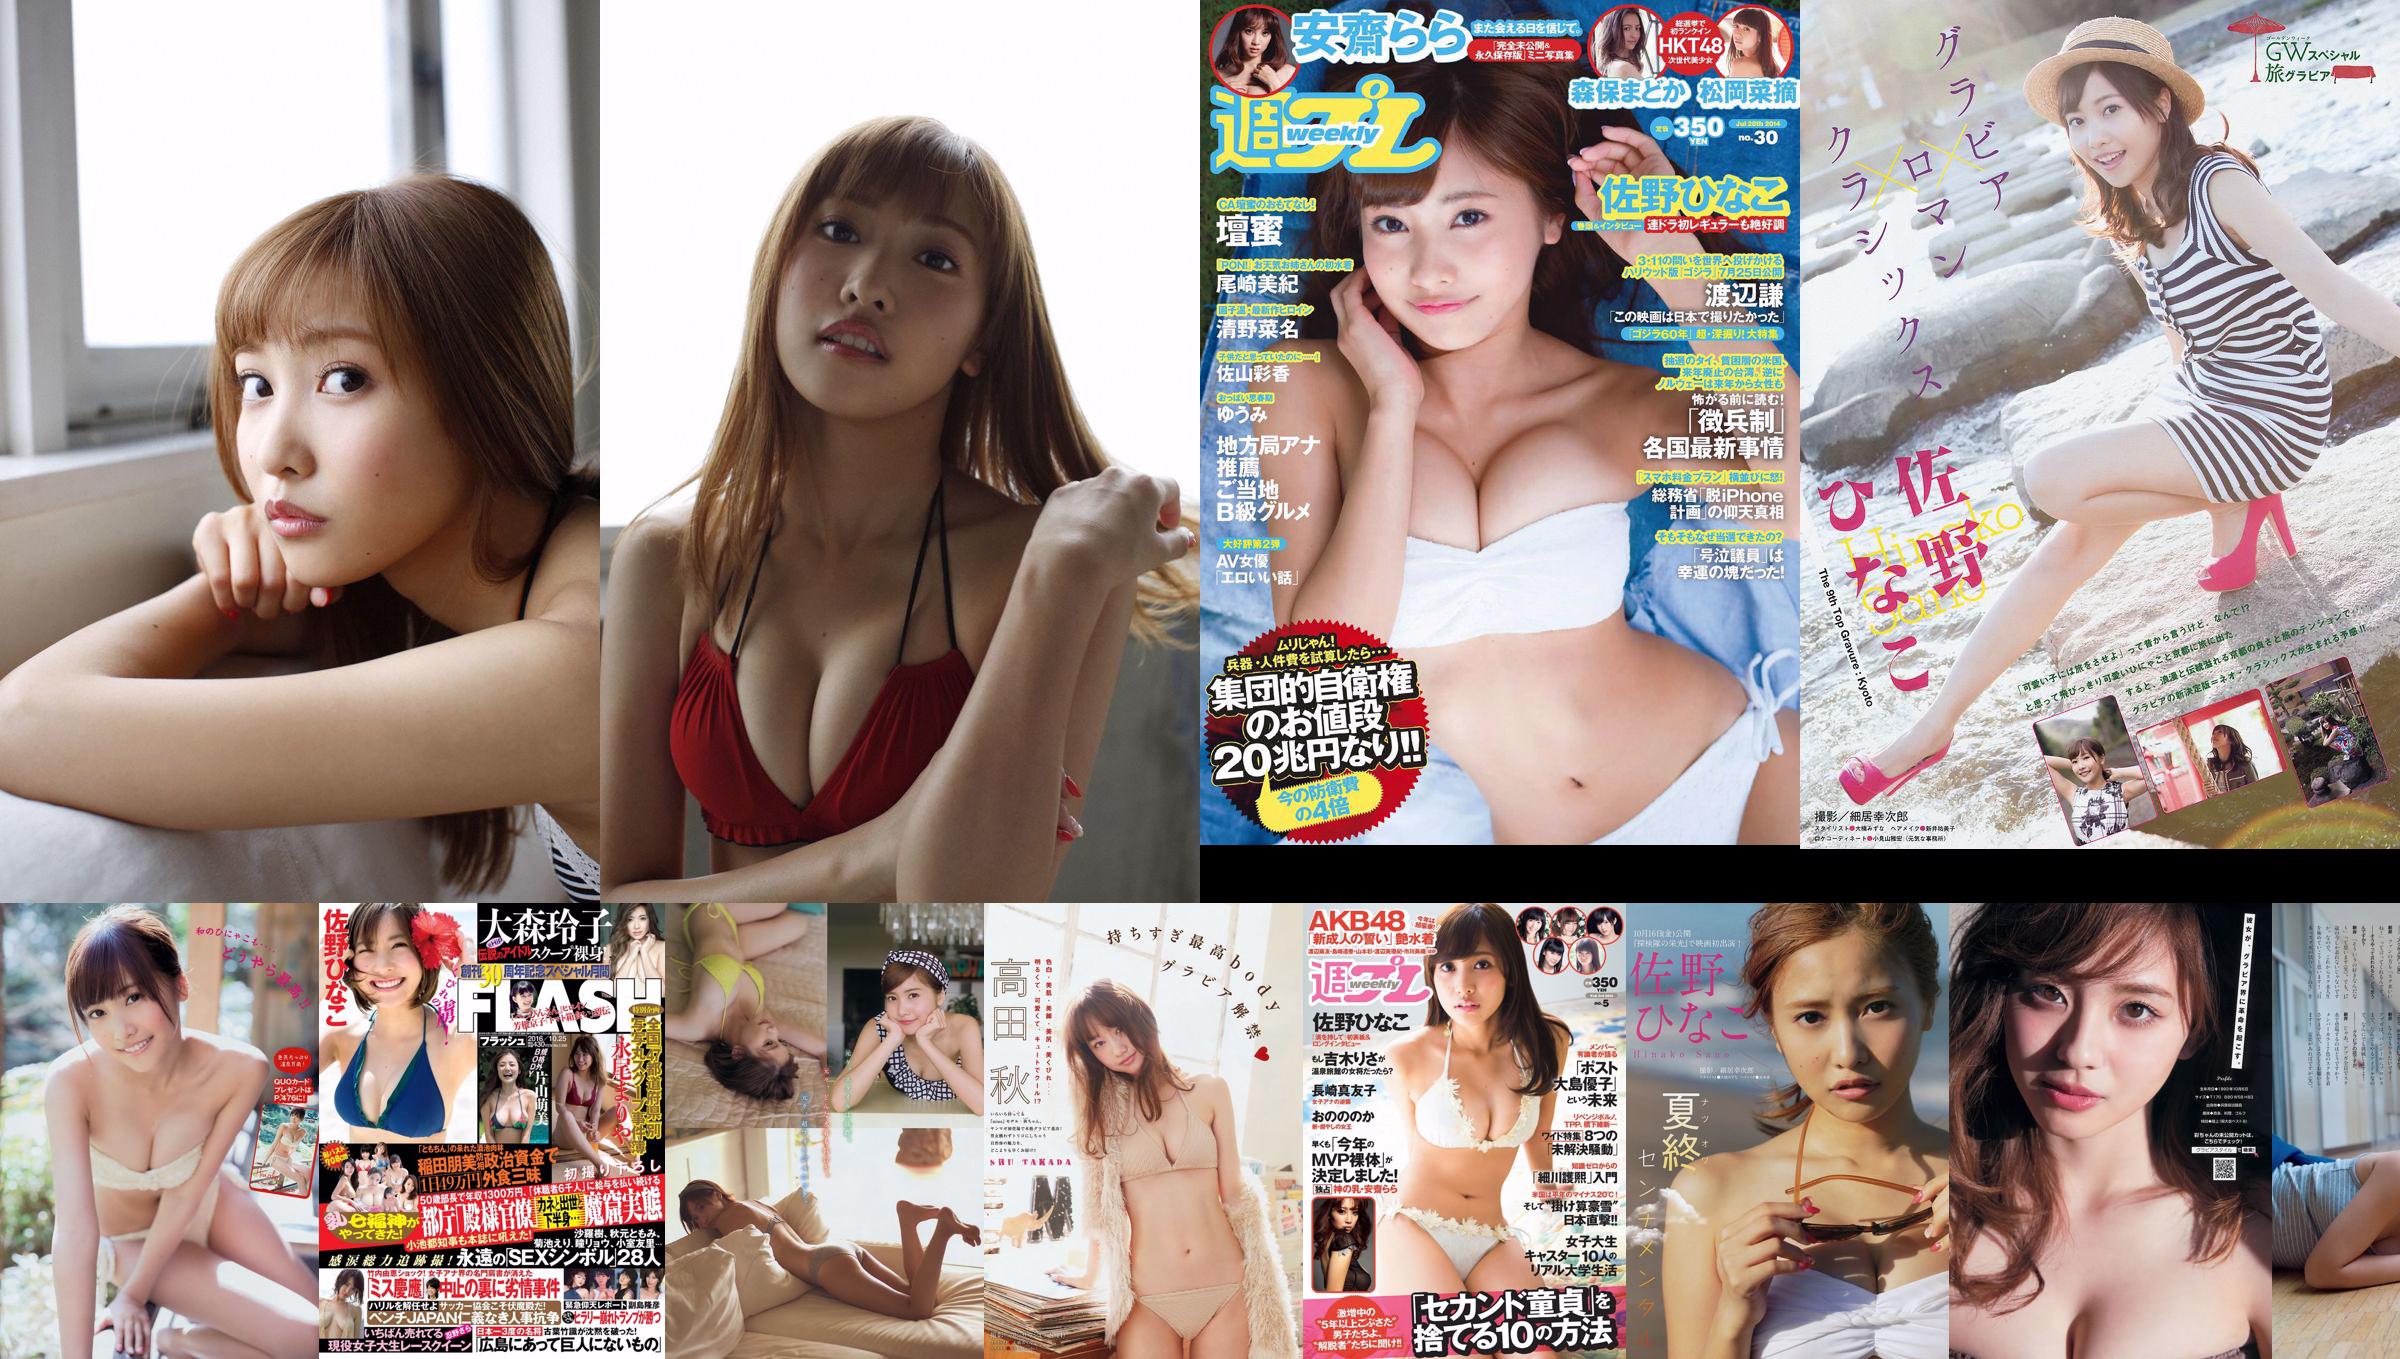 [Young Magazine] Hinako Sano Mitsuteru Kimishima 2015 No.11 Photograph No.f1278b Page 1